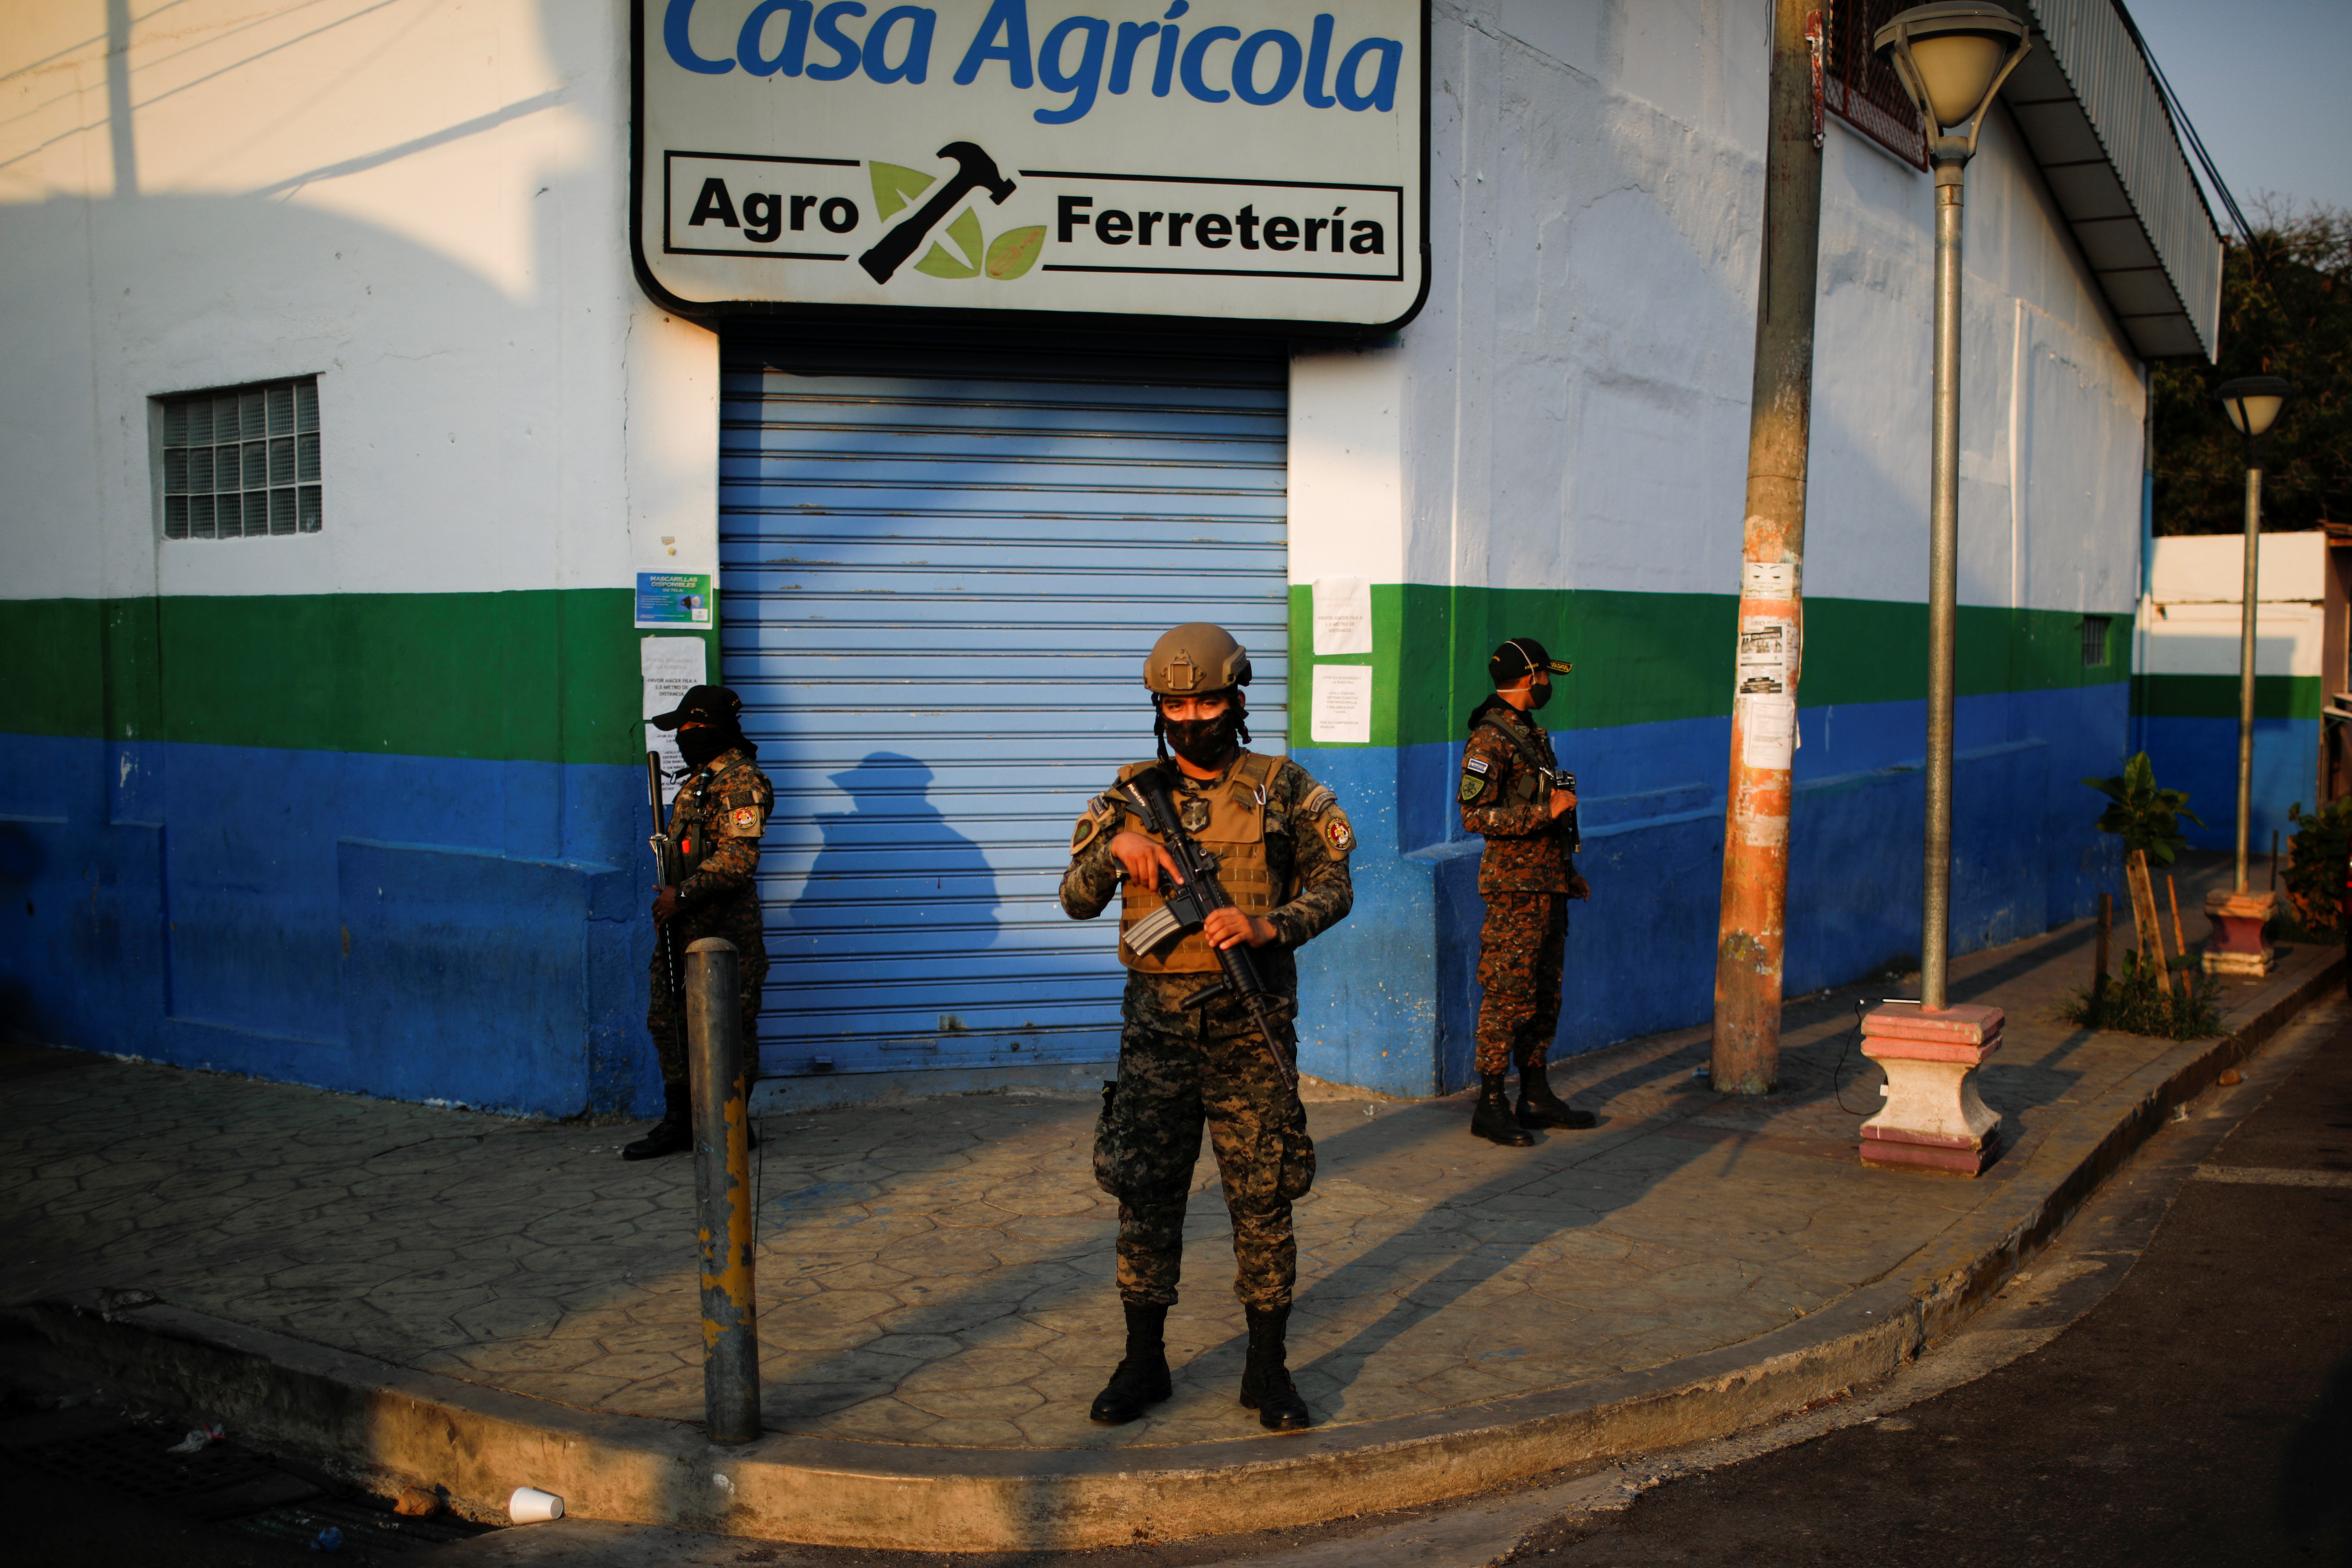 Califican de “estado de excepción” el aislamiento de localidad en El Salvador